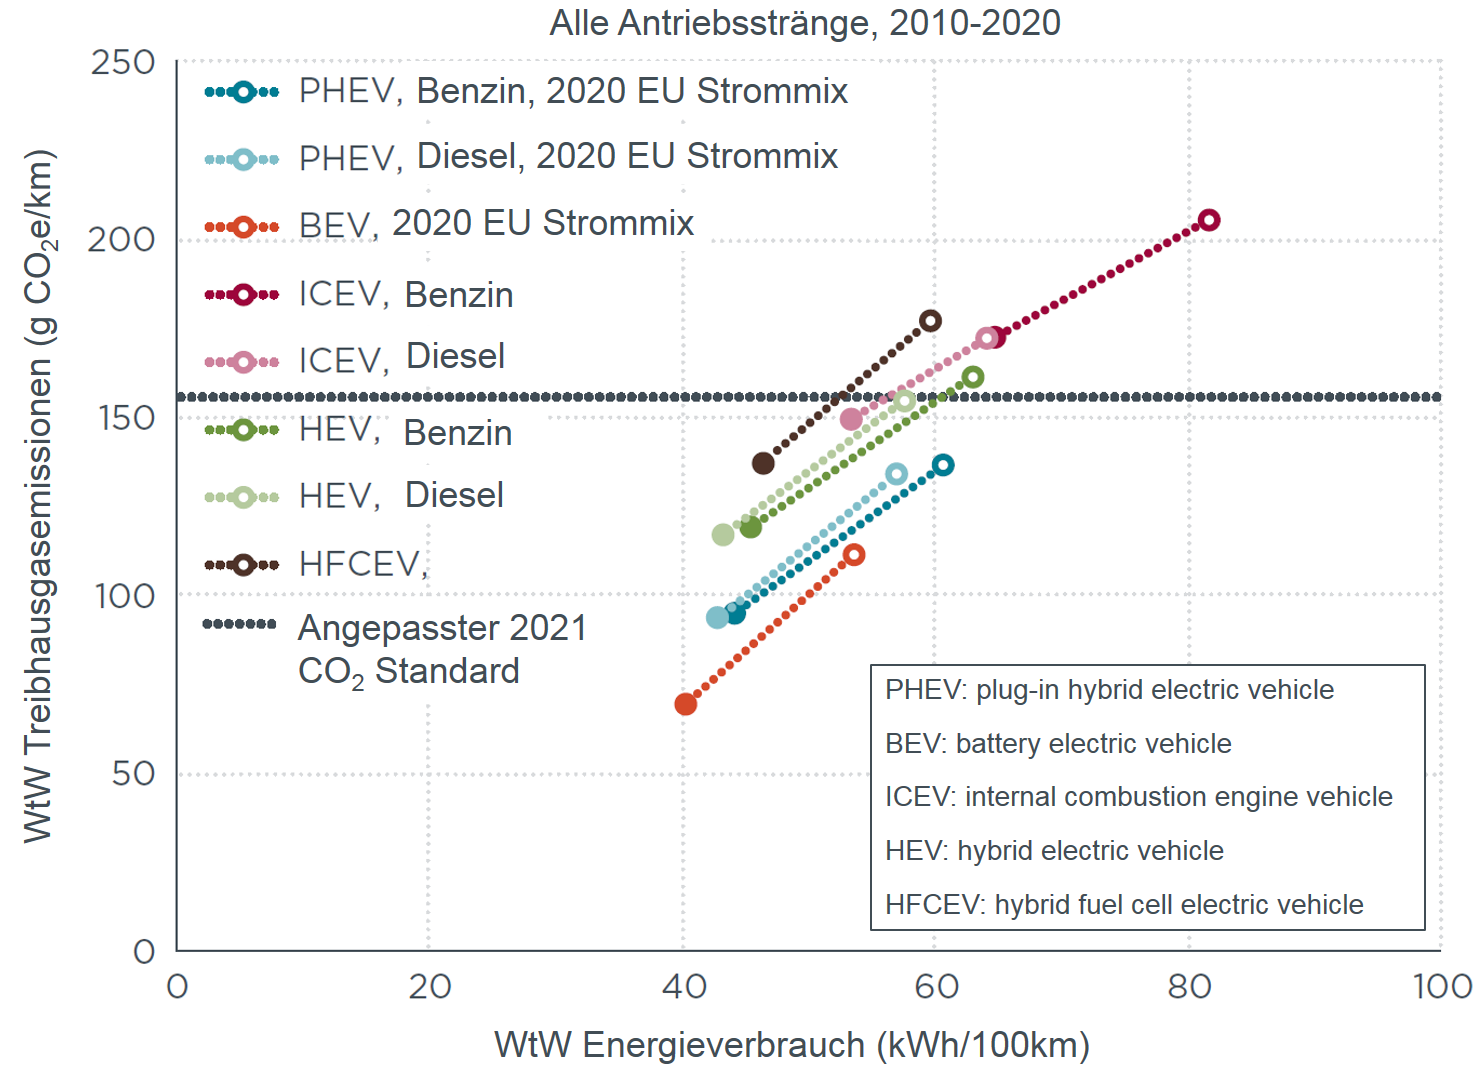 Voraussichtliche Treibhausgasemissions- und Energieverbrauchsänderung